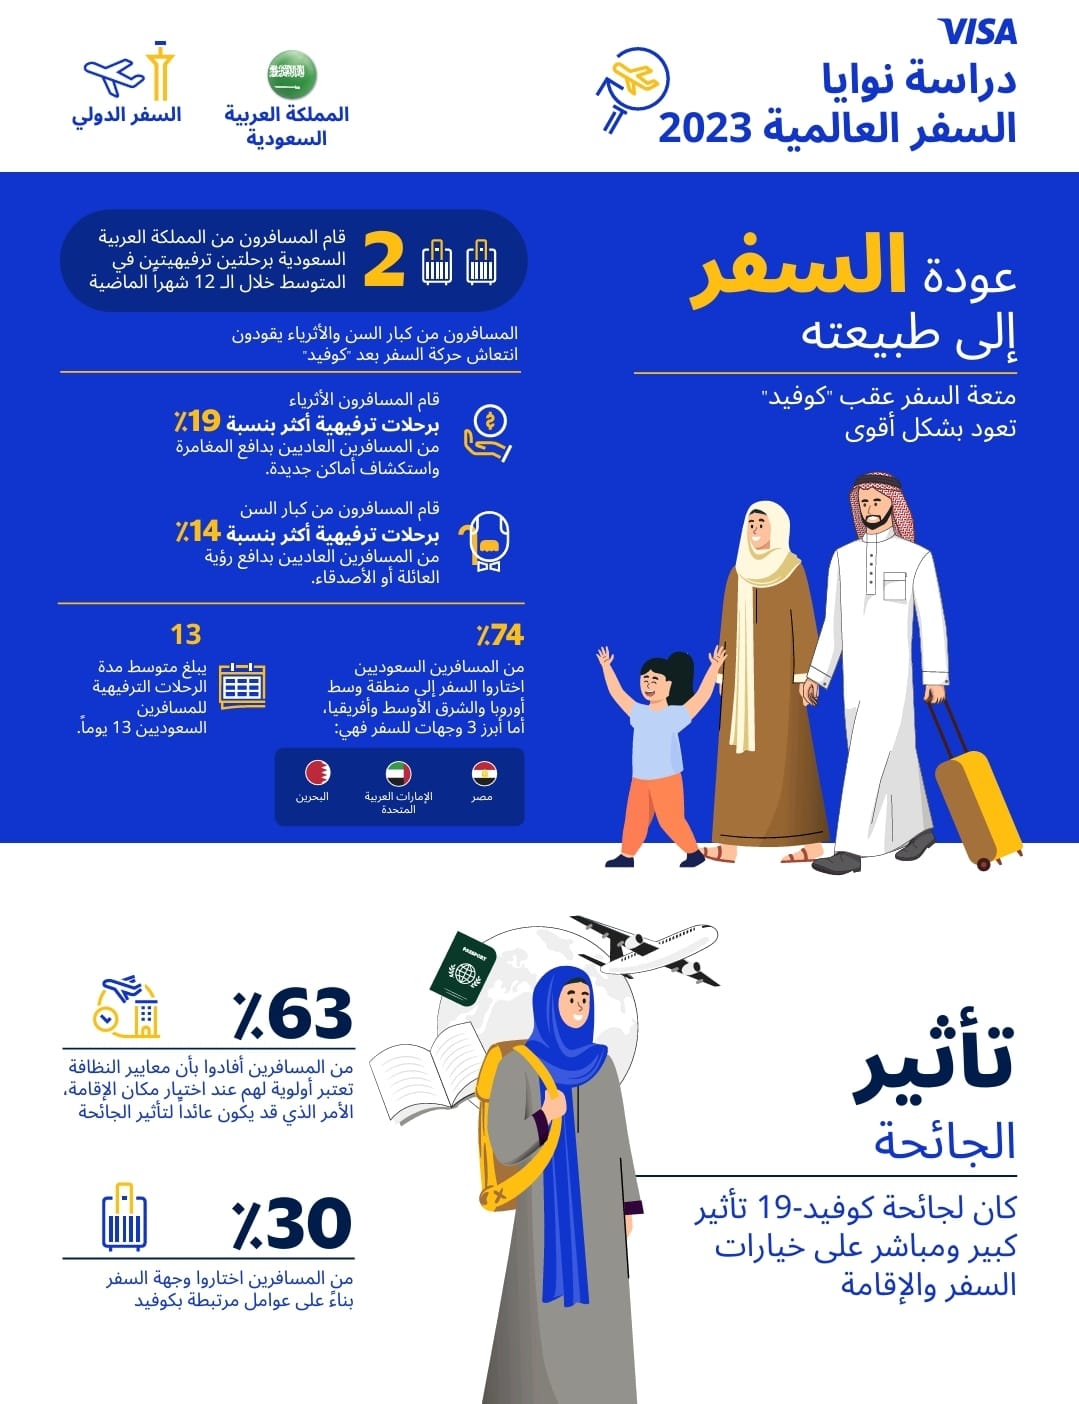 المدفوعات الرقمية جزء لا يتجزأ من تجربة السفر الآمنة والمجزية لـ 71% من المسافرين من  السعودية